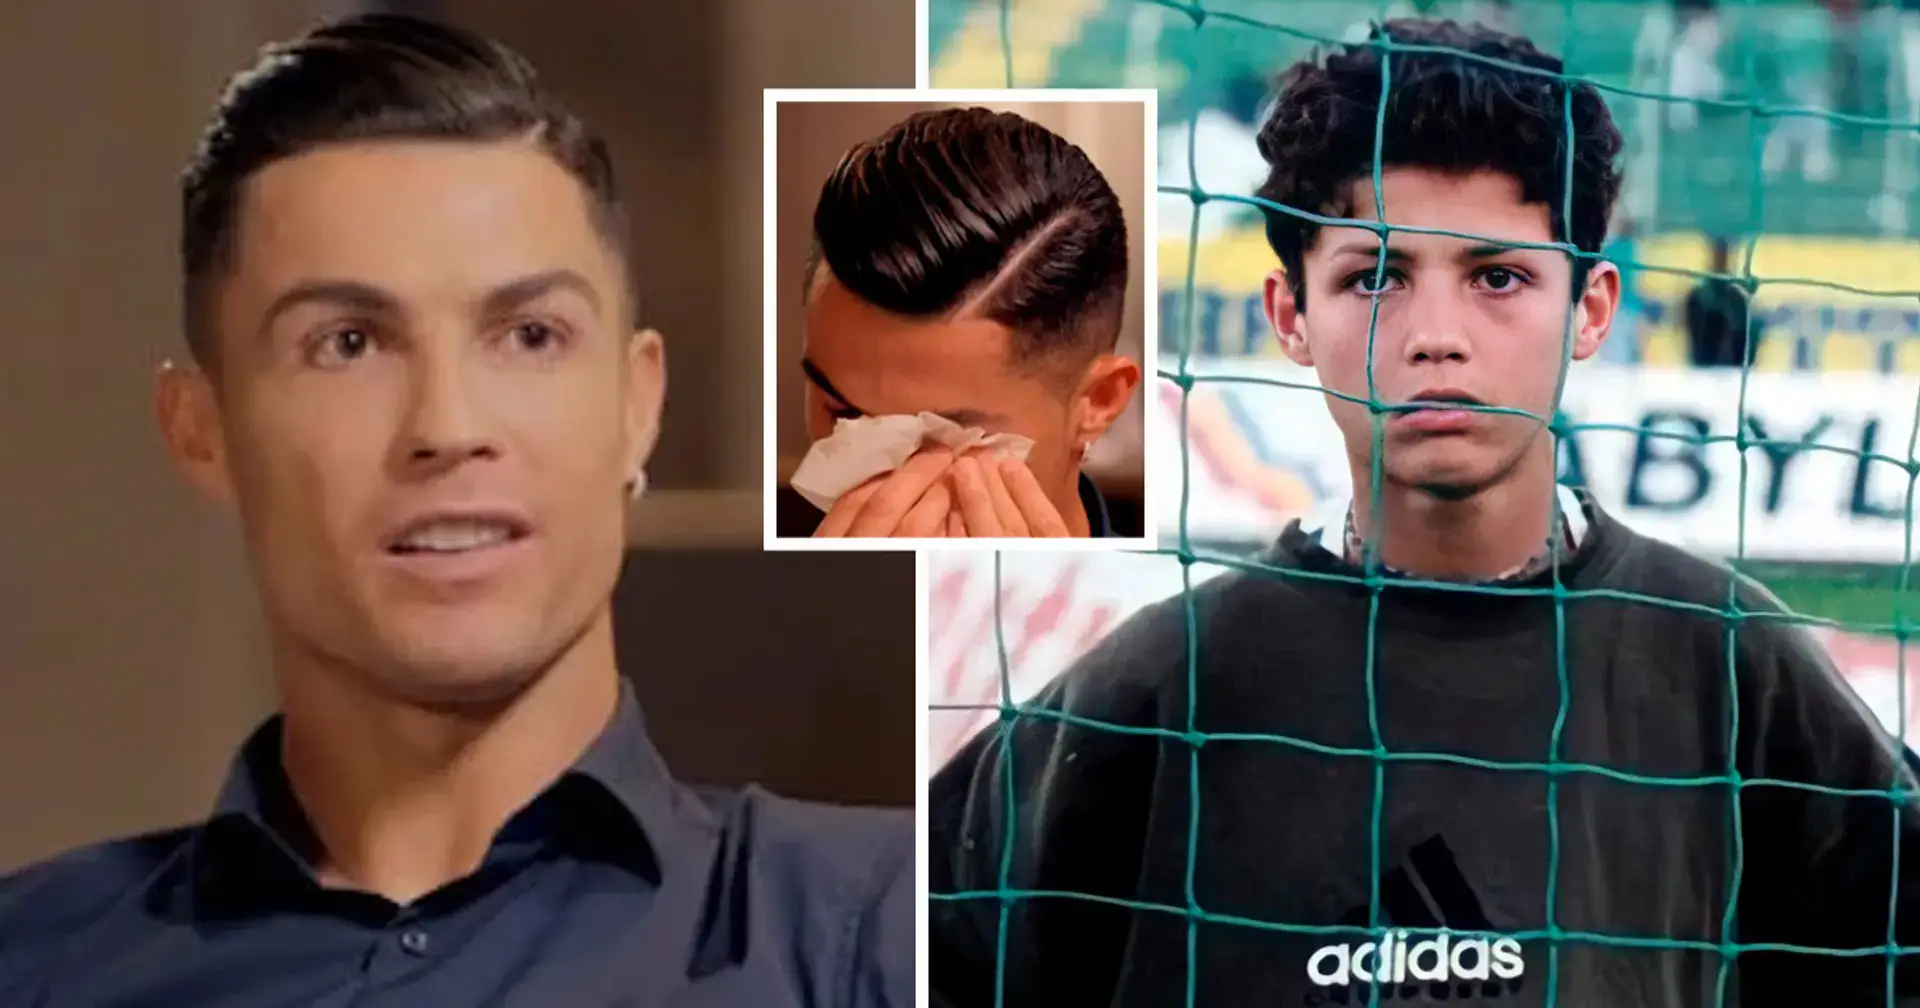 Cristiano Ronaldo: 'Traté de encontrar chicas que me dieran hamburguesas cuando tenía hambre' 